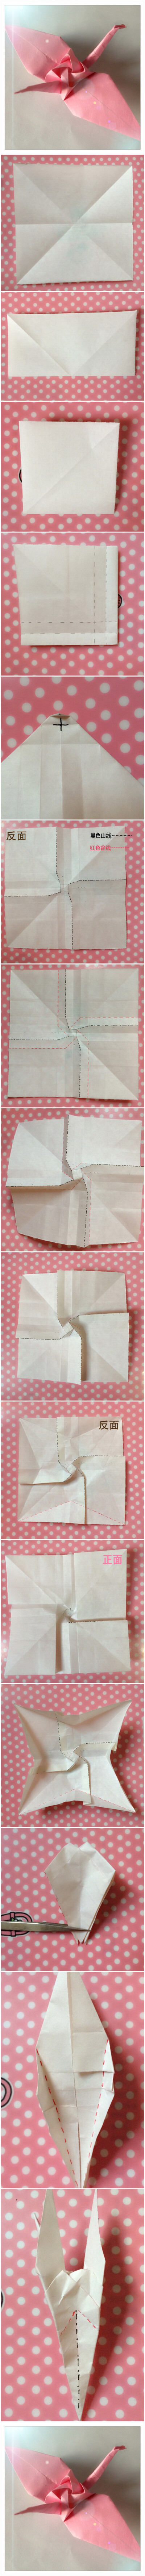 【折纸教程】神谷哲史的玫瑰纸鹤